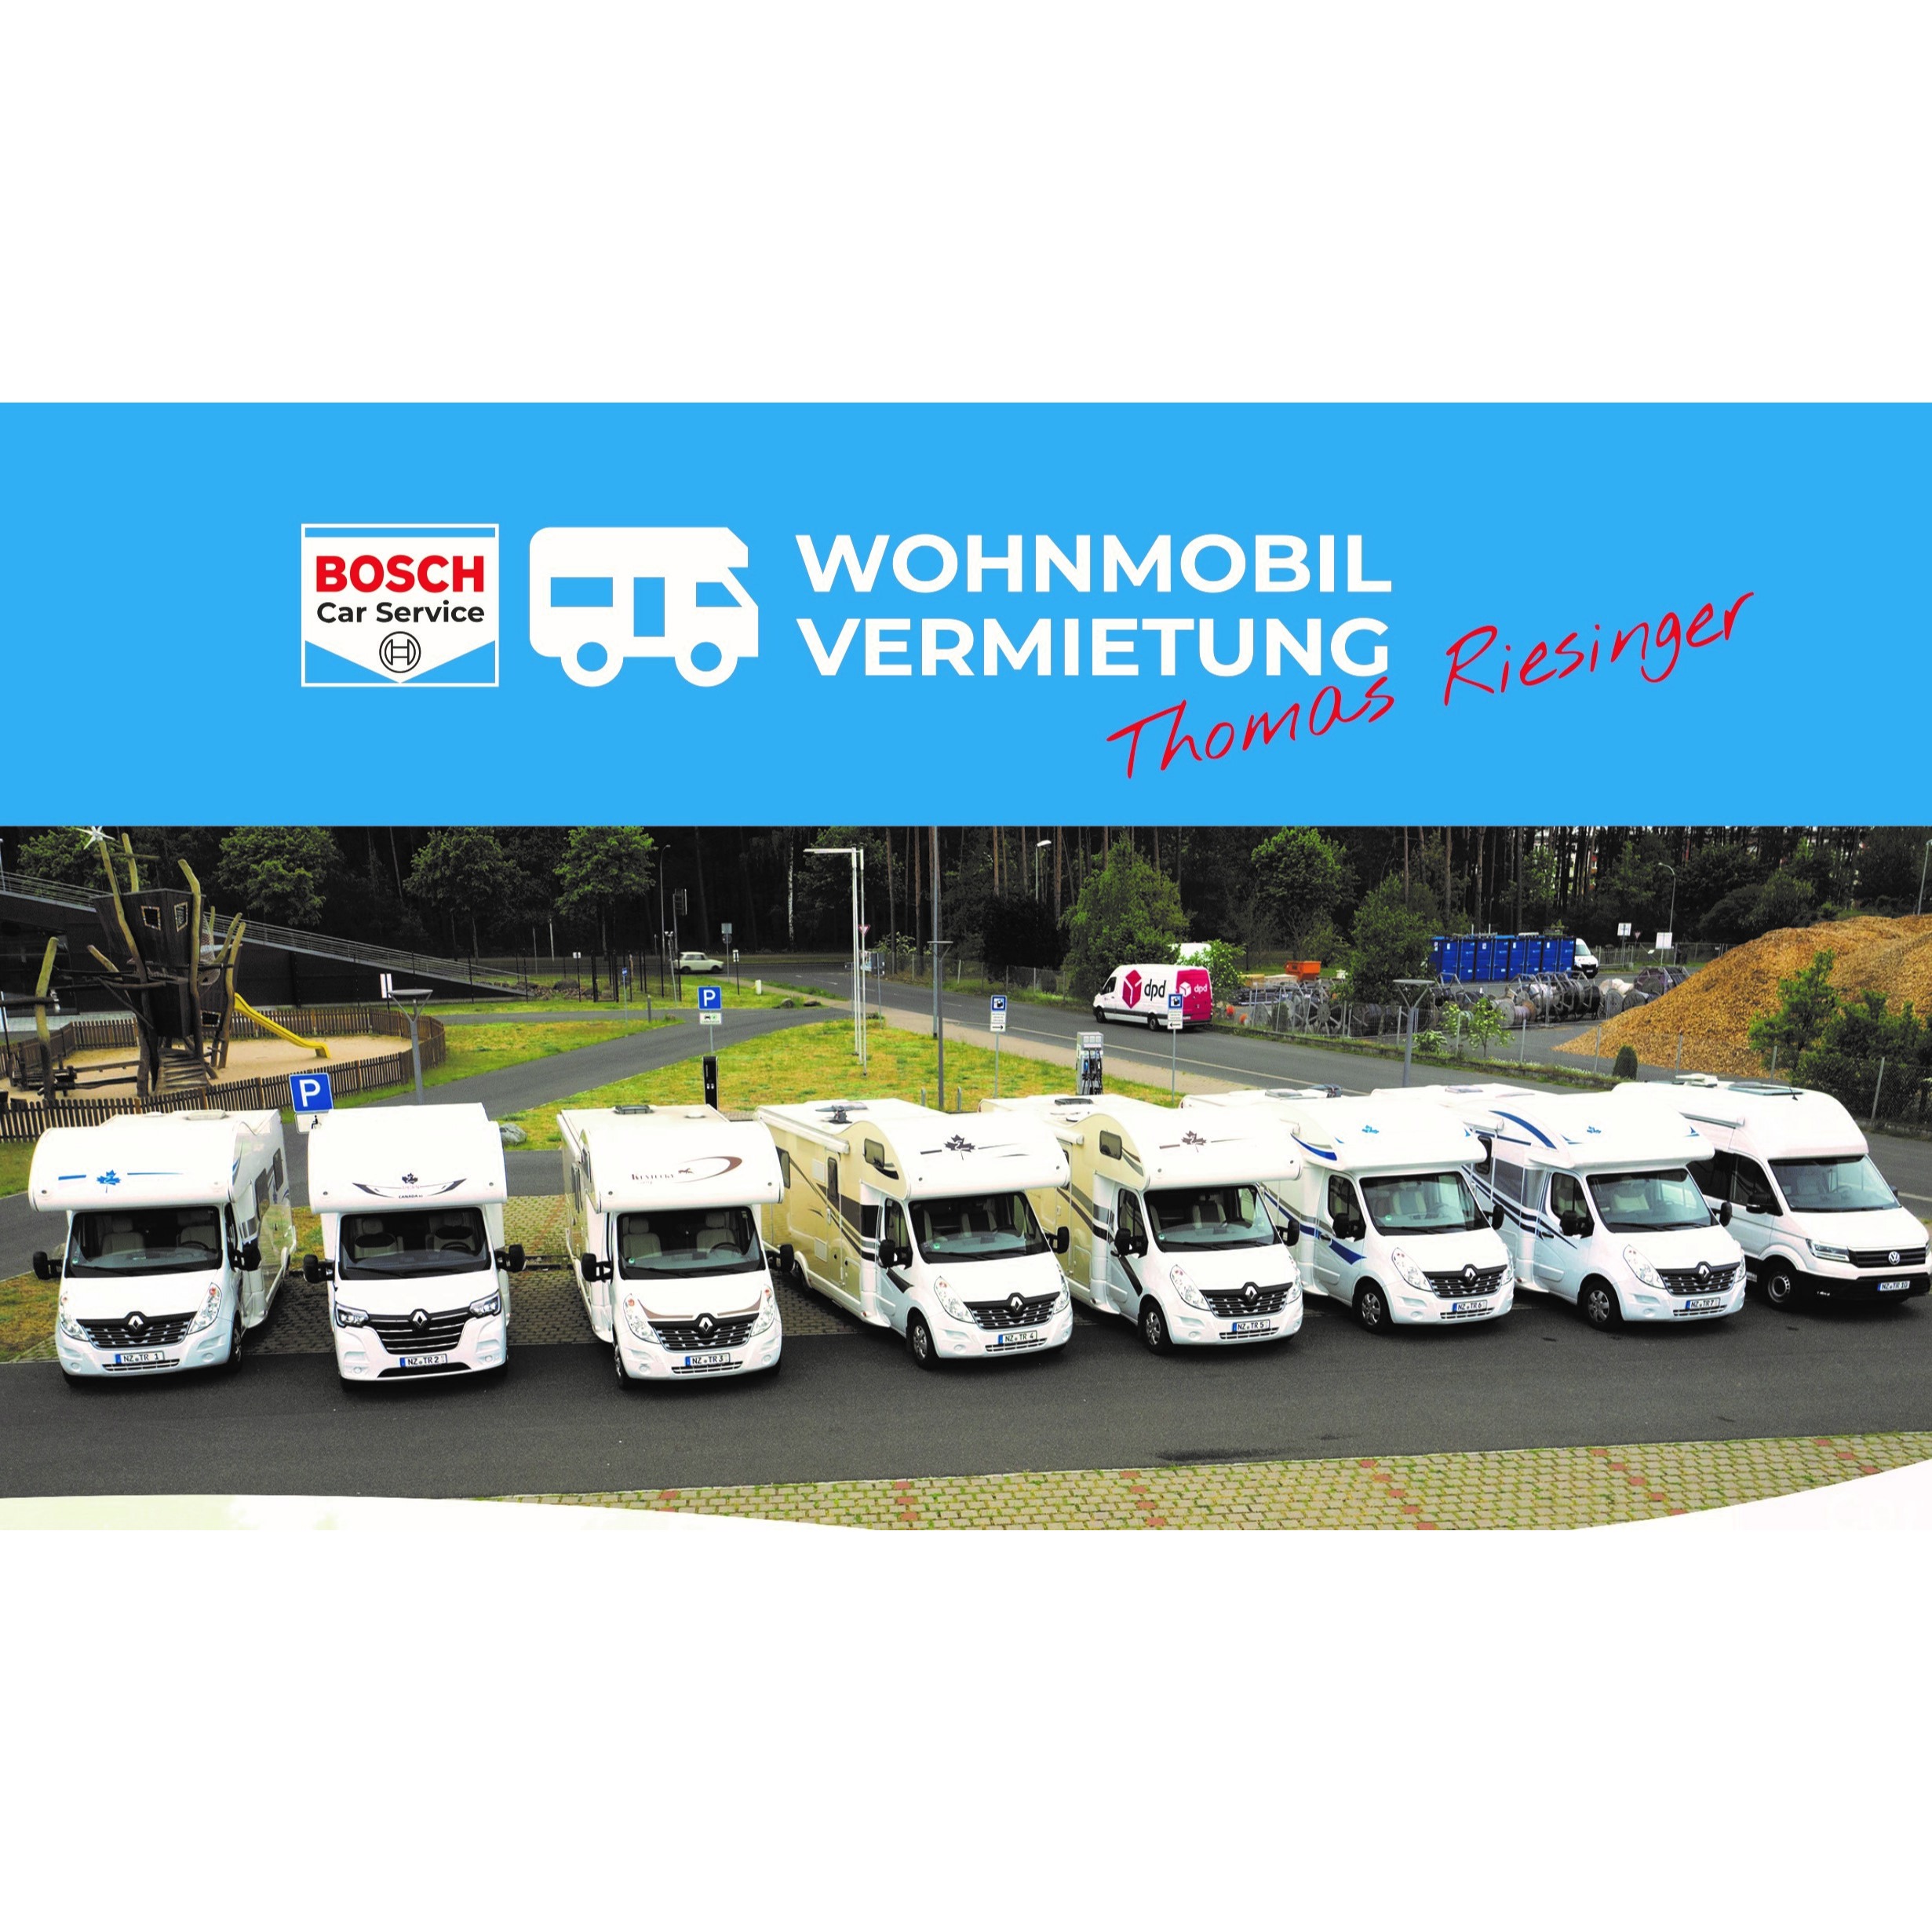 Wohnmobilvermietung T.Riesinger in Neustrelitz - Logo